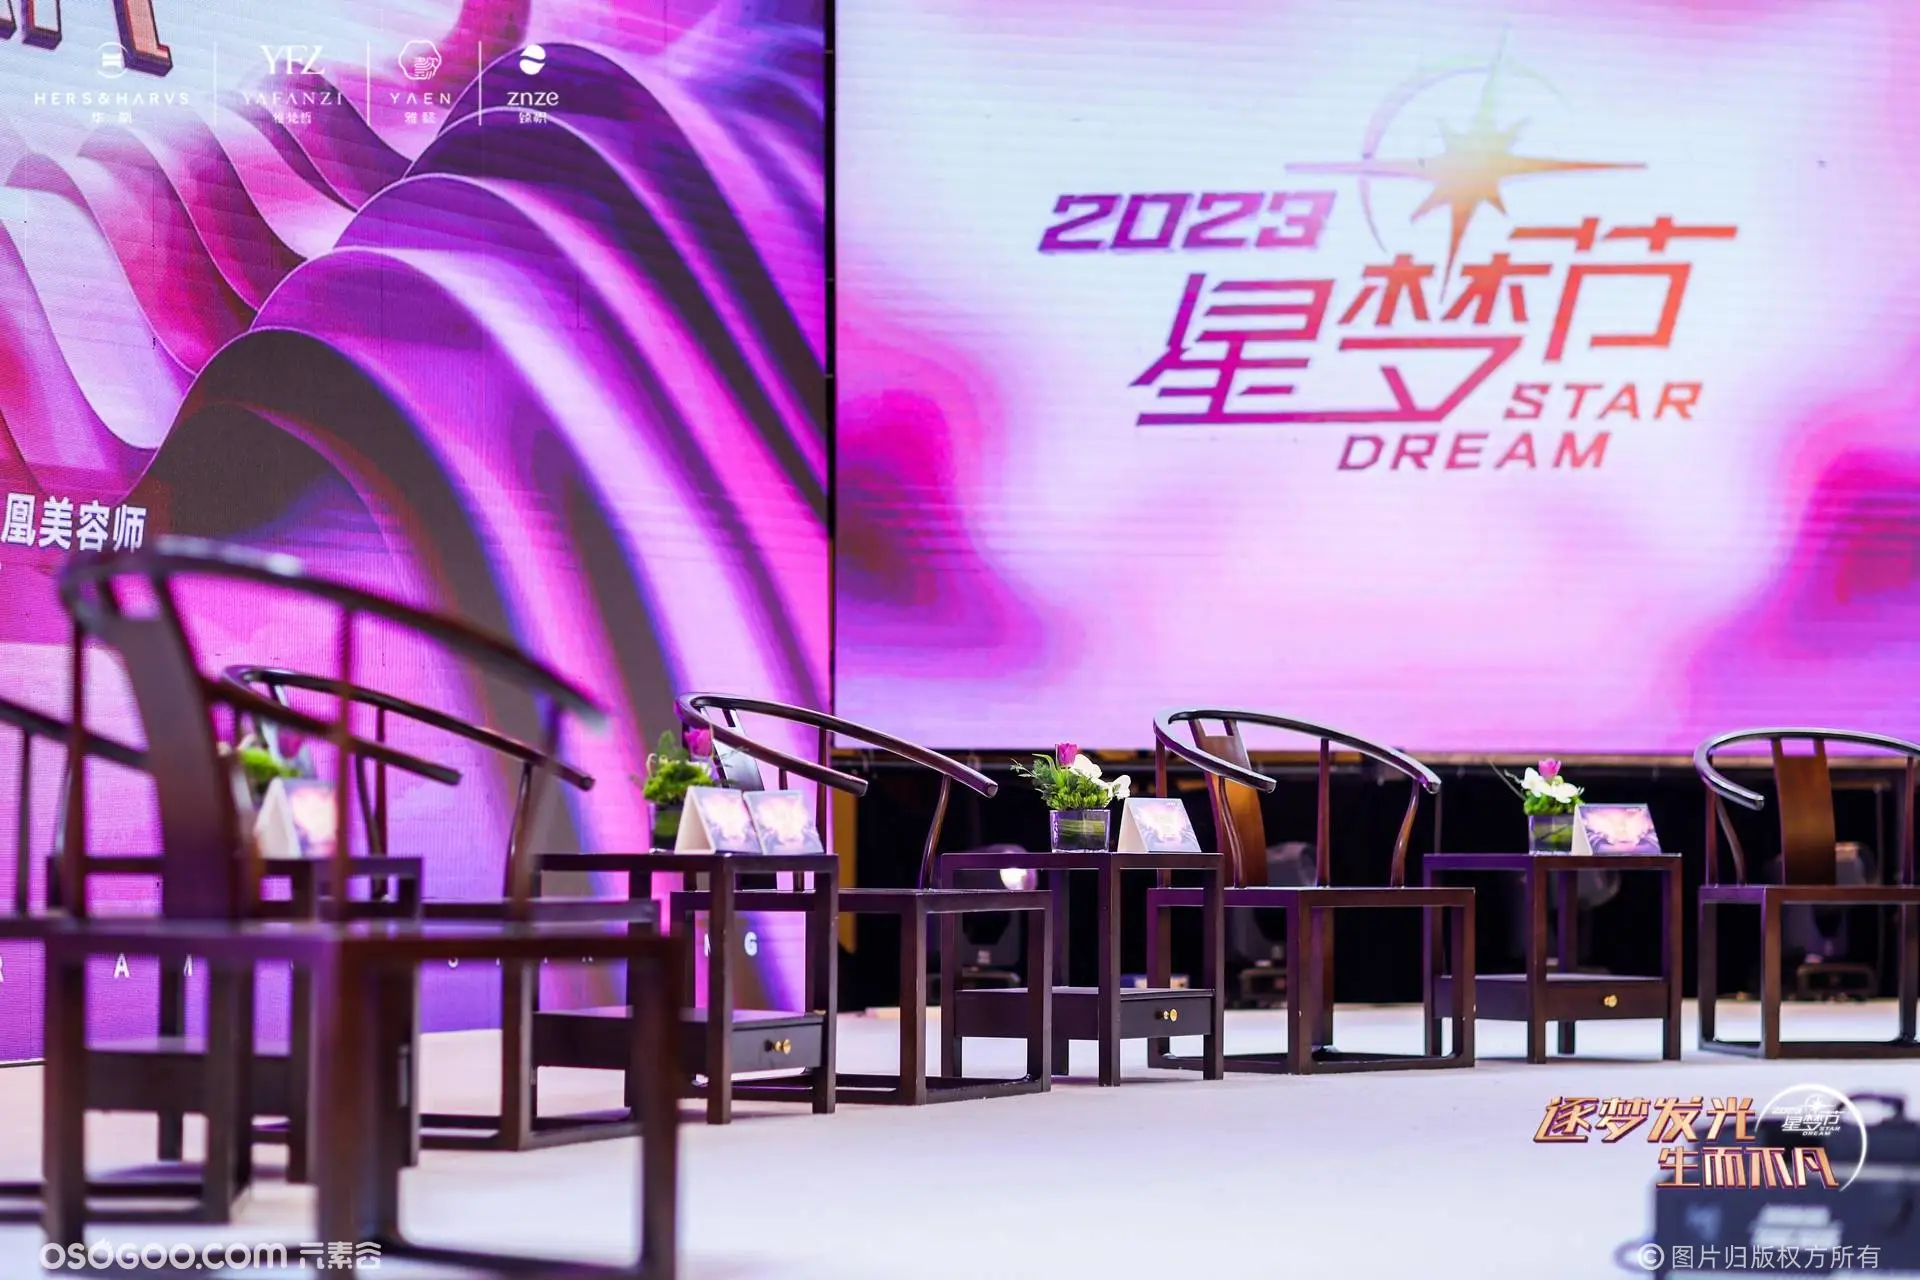 2023年中国·华凰第二届美容师星梦节！